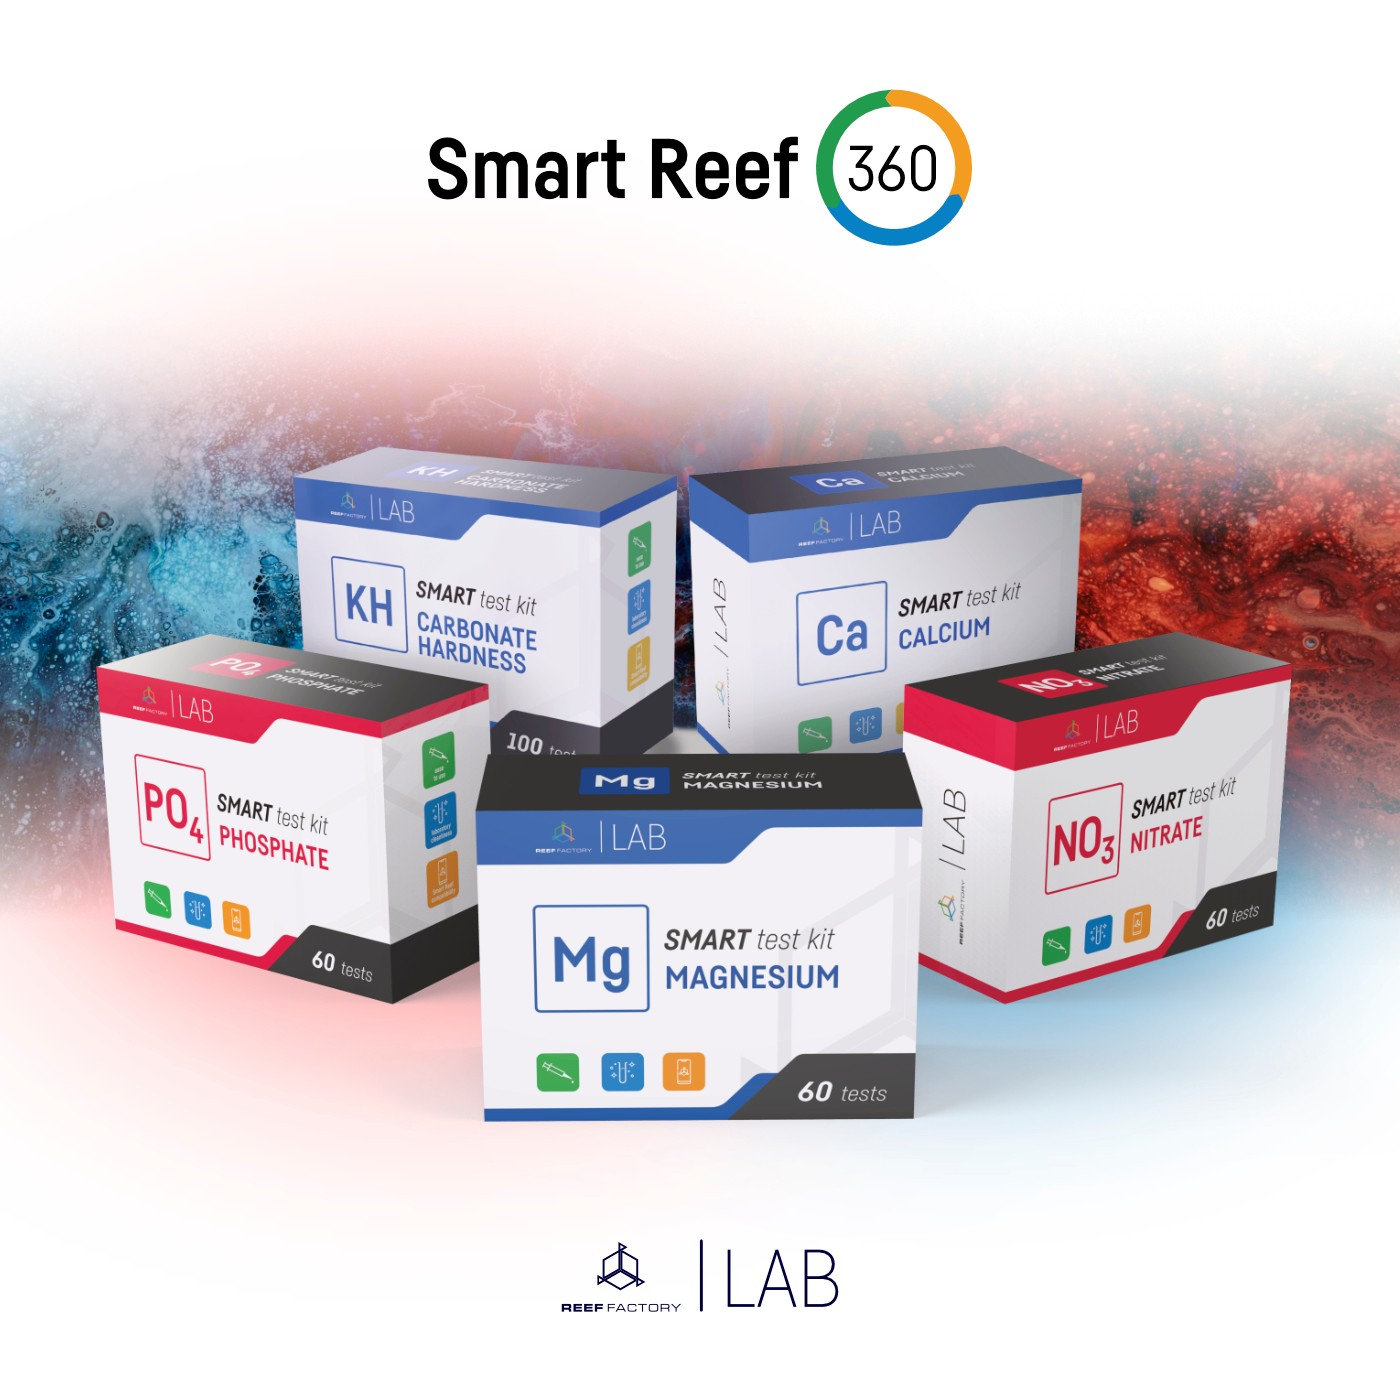 Reef Factory - PO4 (Fosfat) Smart Test